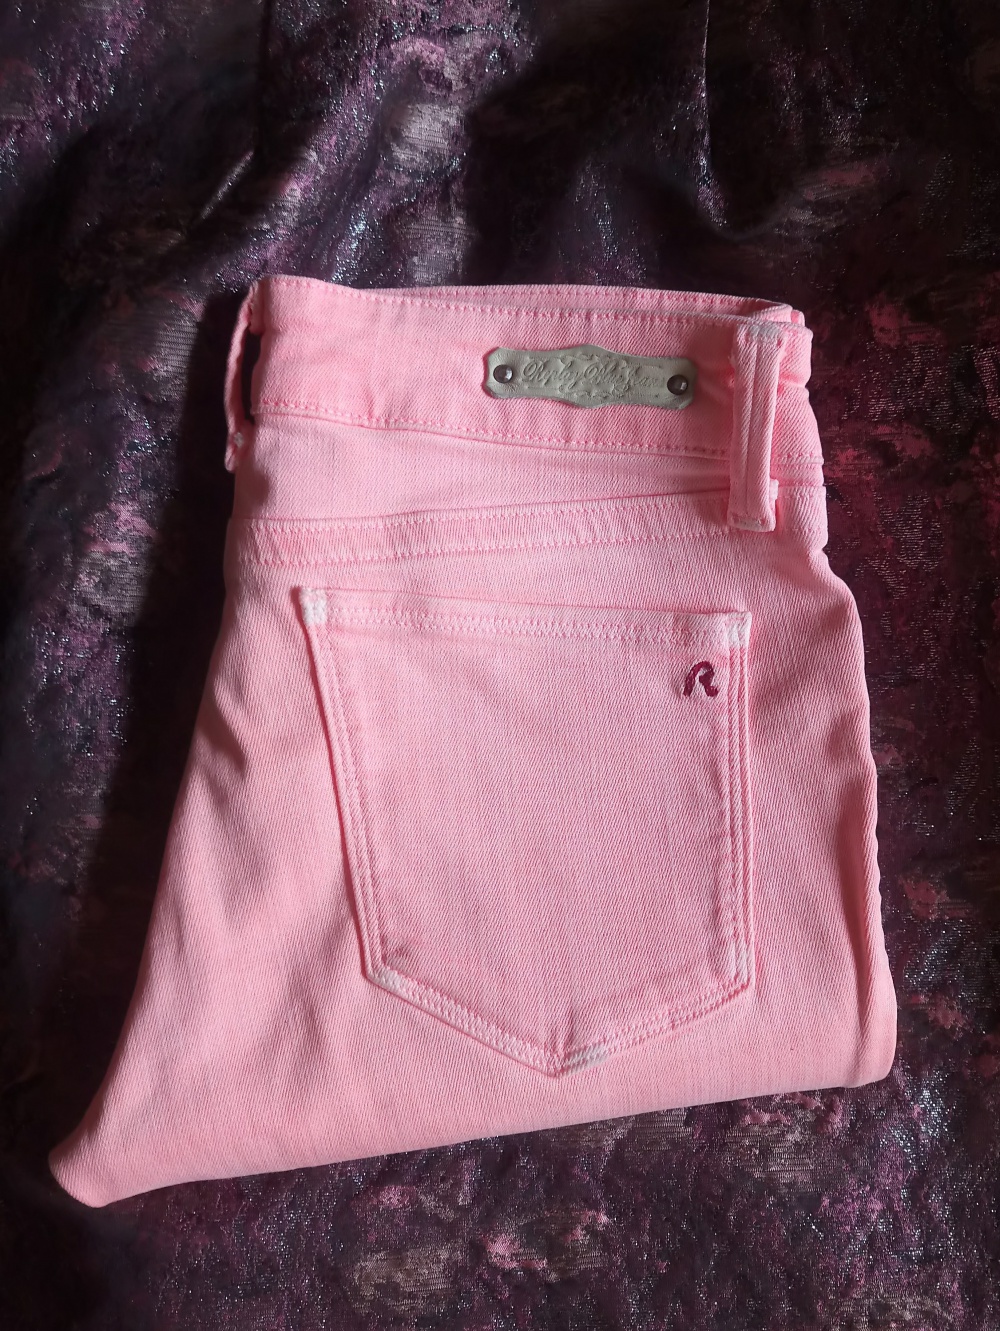 Джинсы REPLAY LUZ SUPER SKINNY Jeans яркие нежно-розового цвета